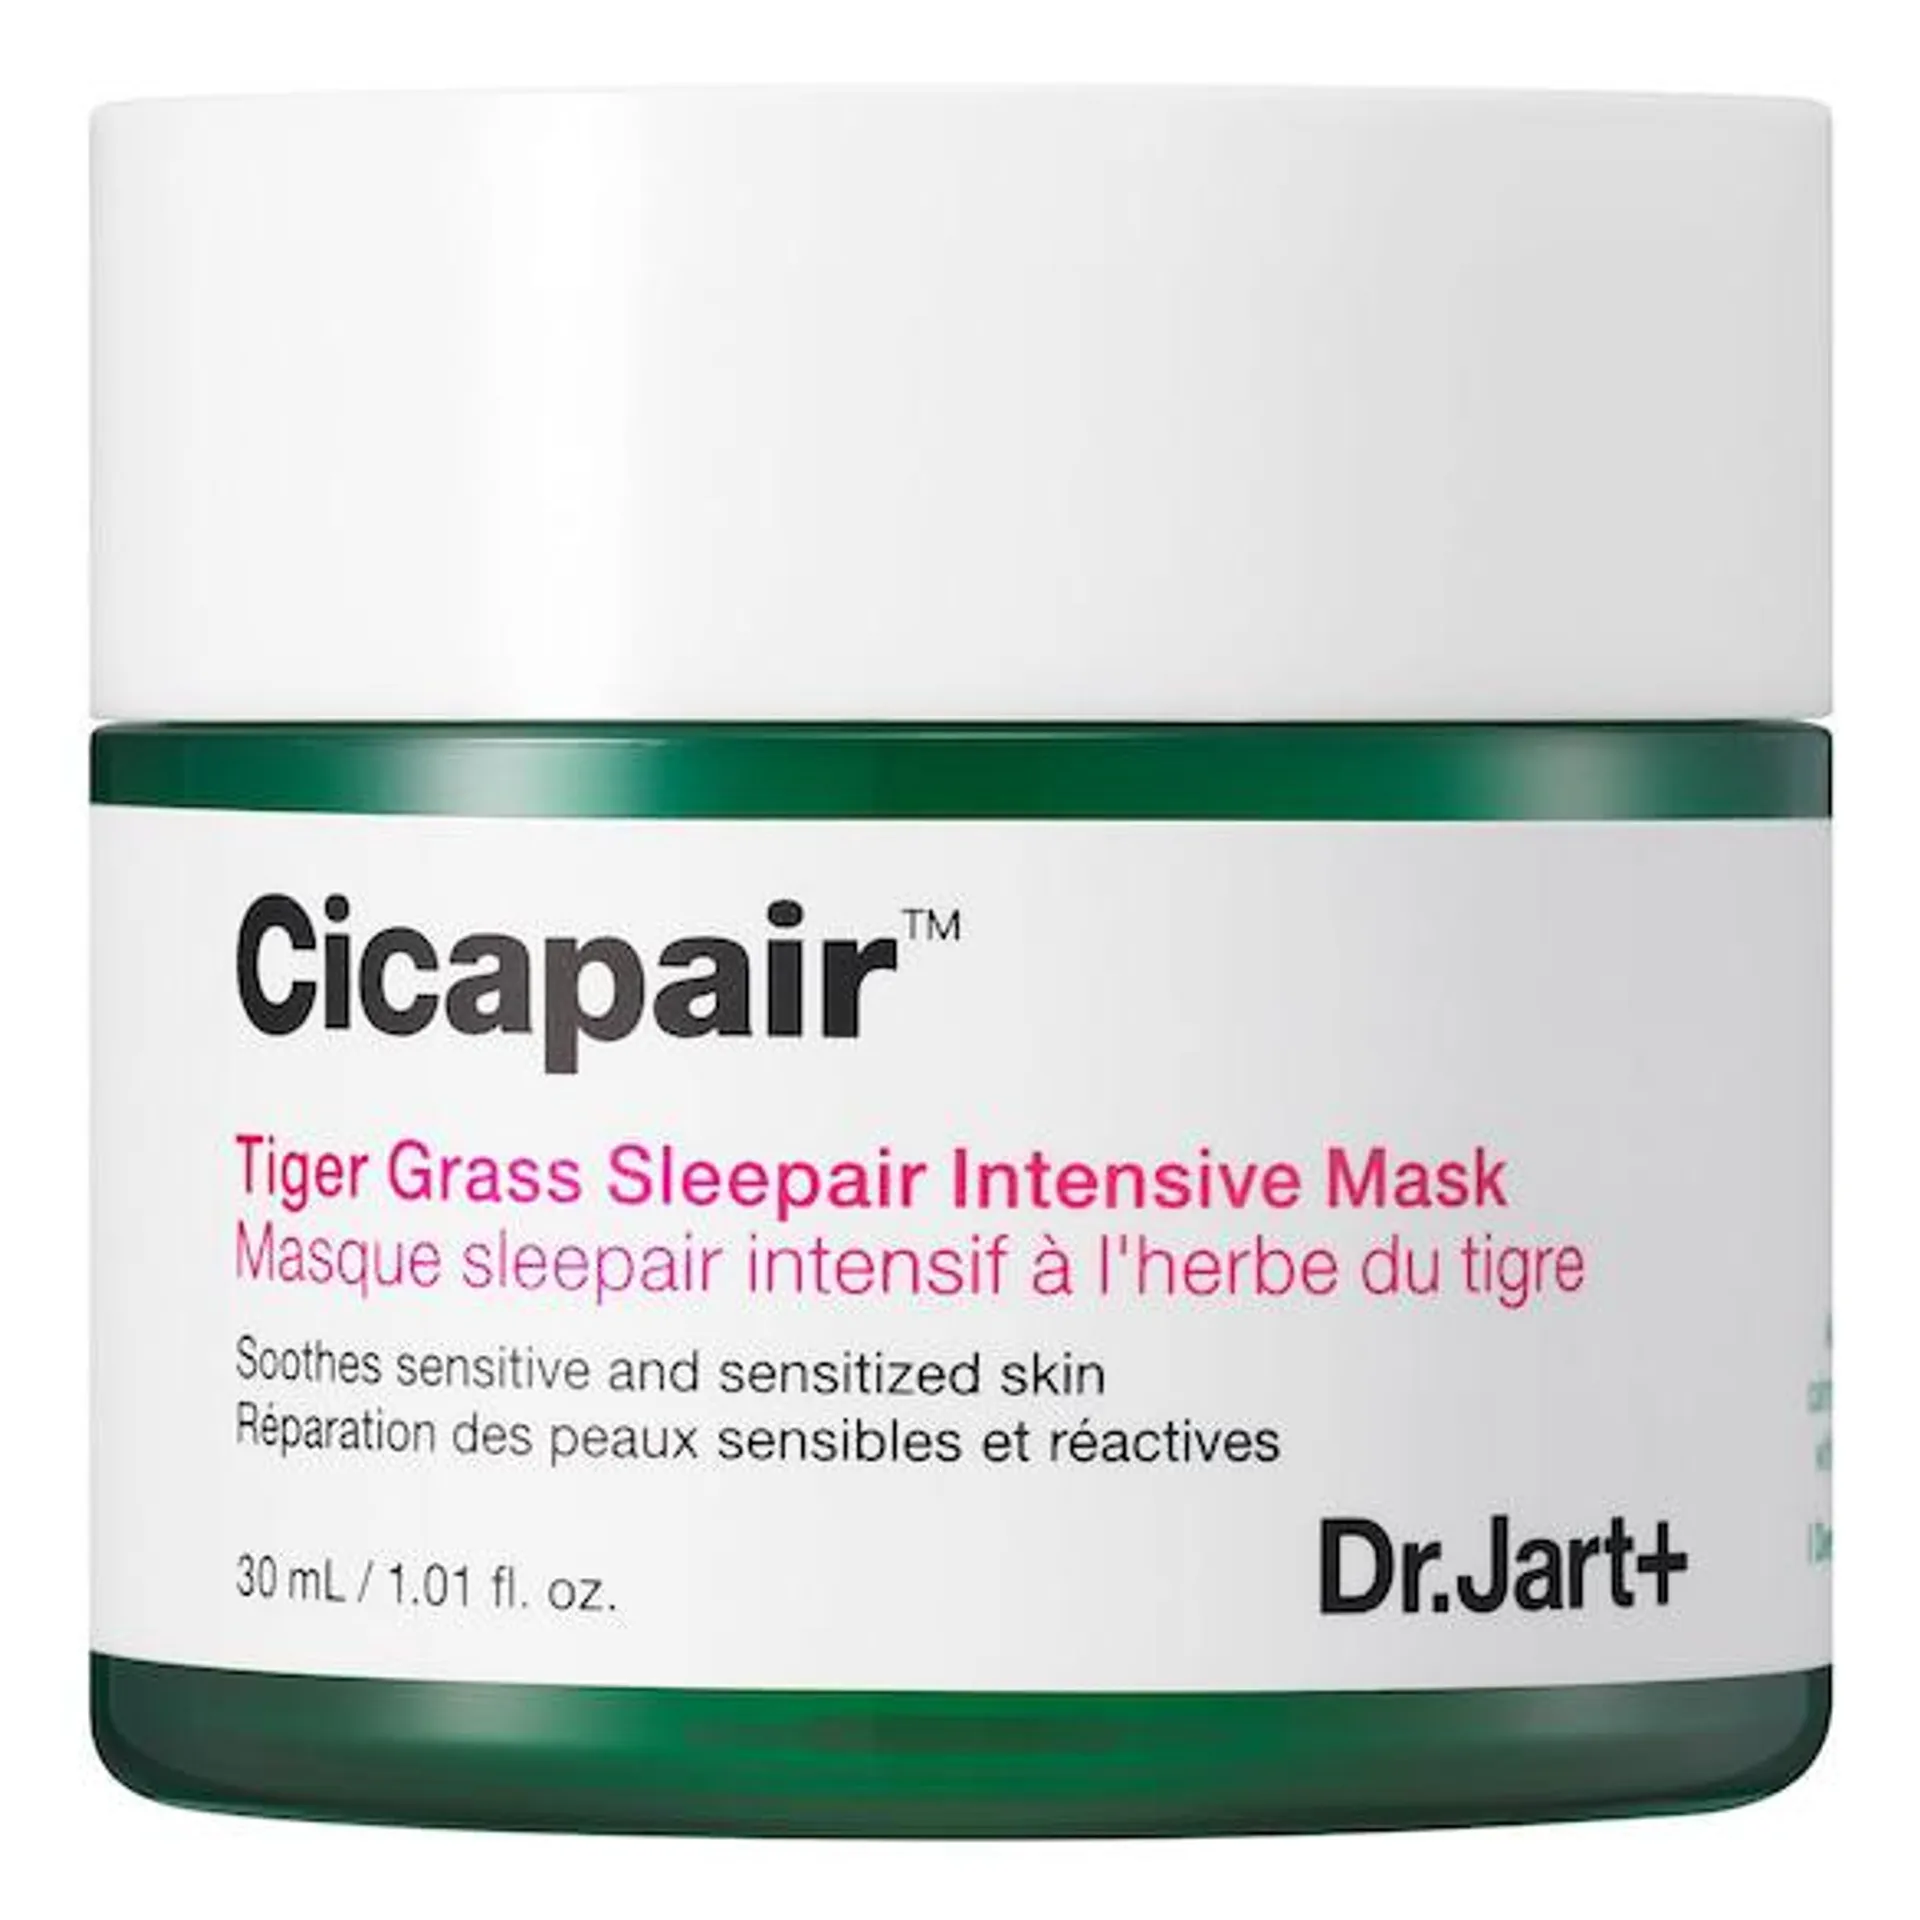 Dr.Jart+ Cicapair Sleepair Intensive Mask